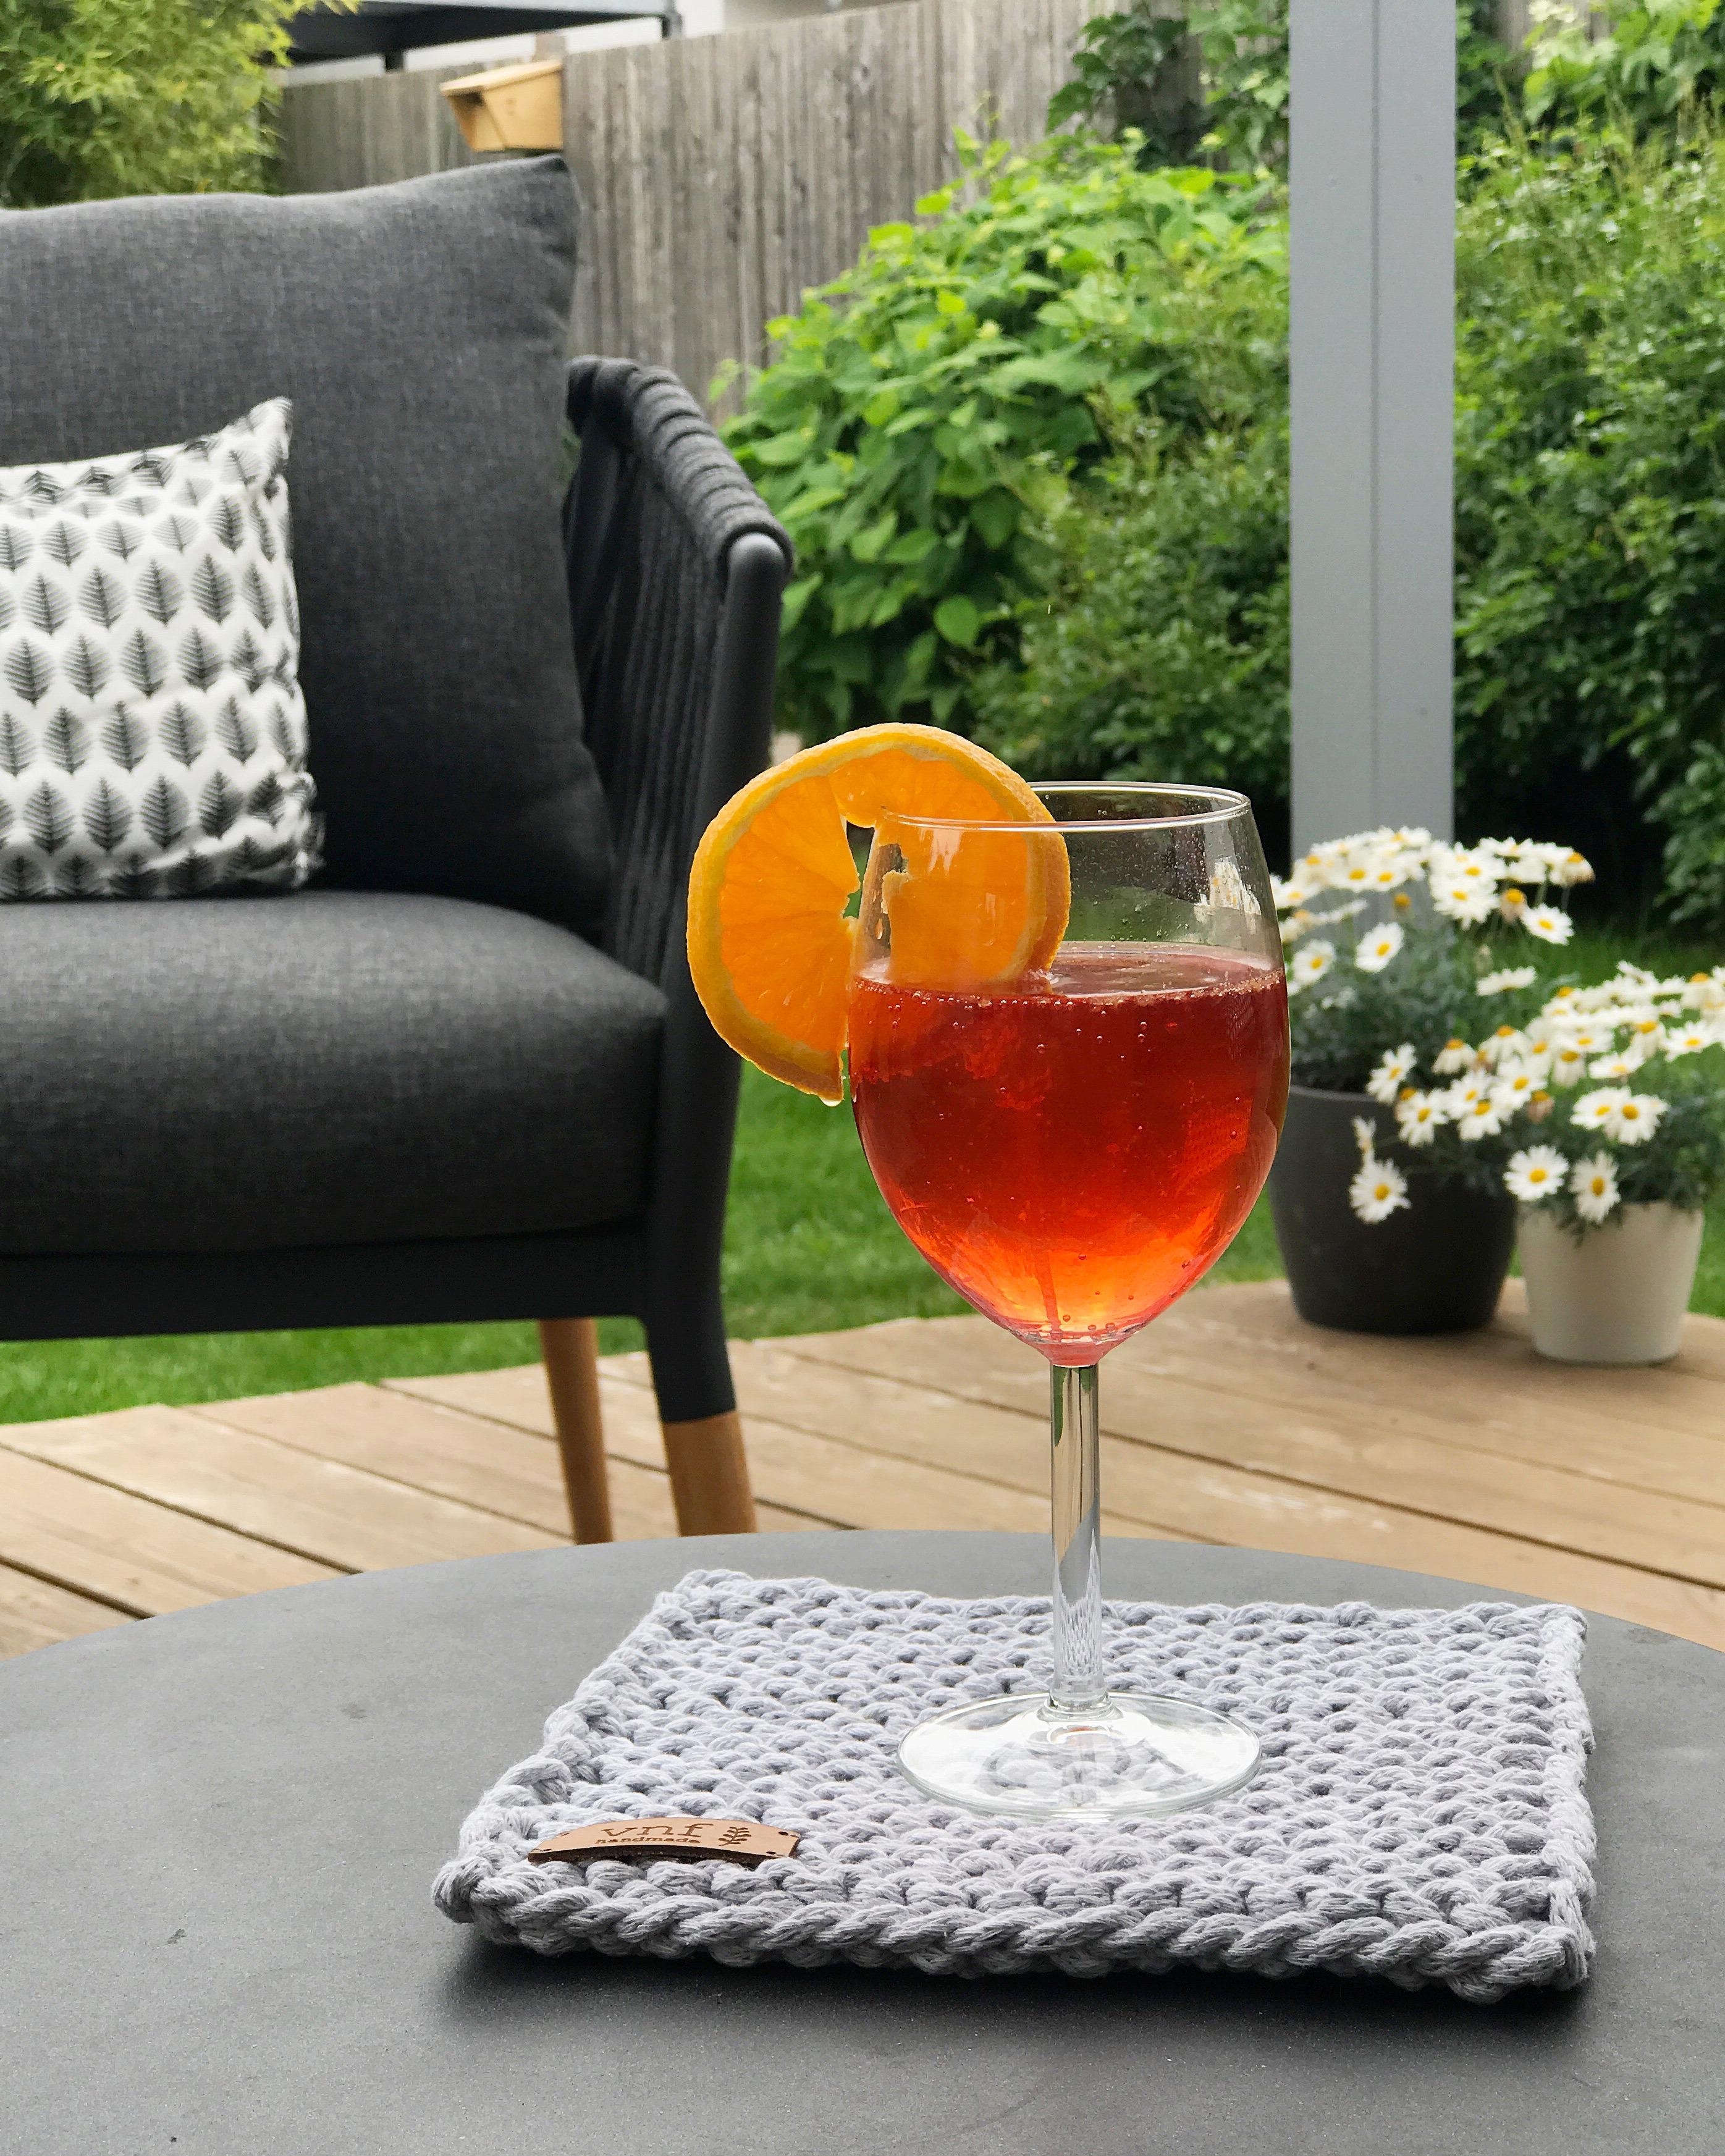 Mitten in der #outdoorsaison ... Willkommen in unserem Garten!

#terrasse #garten #cocktail #lounge #gartenliebe